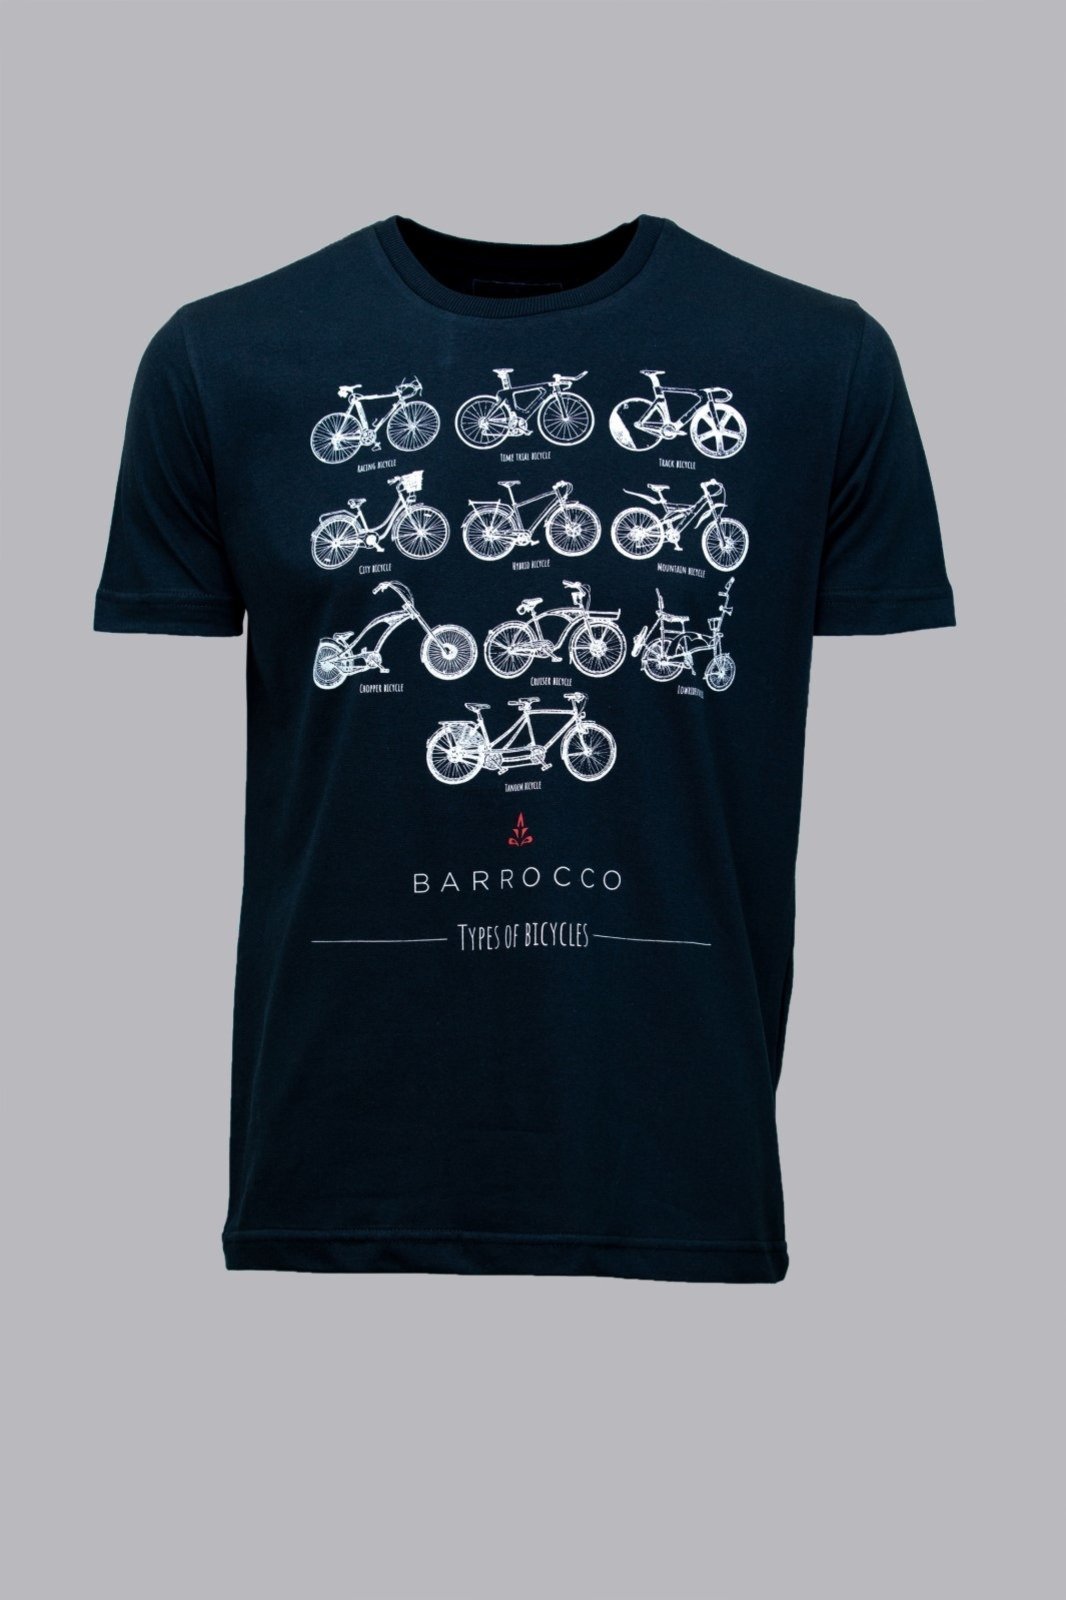 Camiseta Barrocco Escolha a Sua Bicicleta